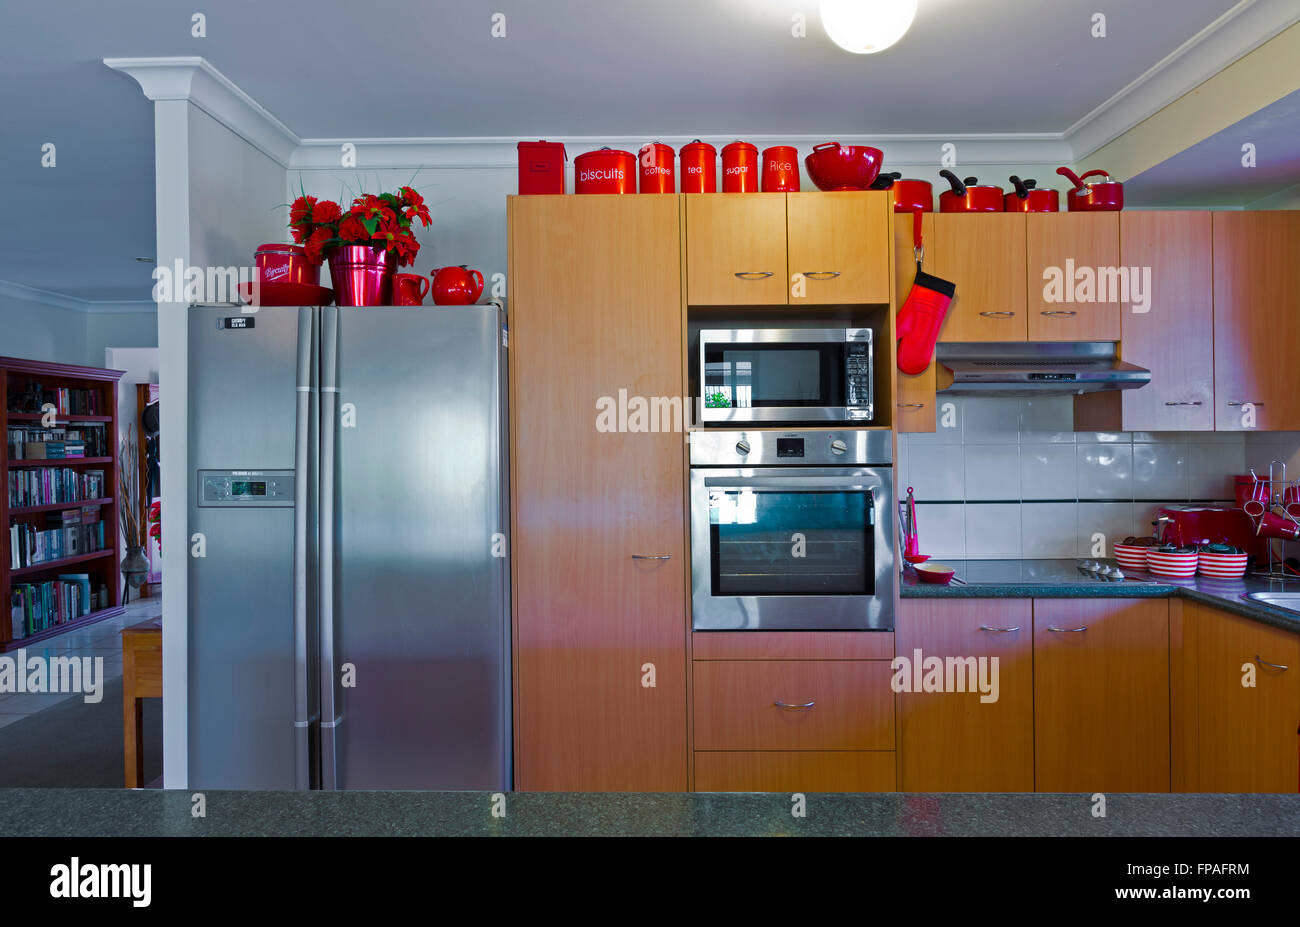 Küche rot gestylt zeigen Geräte, Geschirr, Vorhänge, Besteck, Spüle, Geschirrspüler Stockfoto